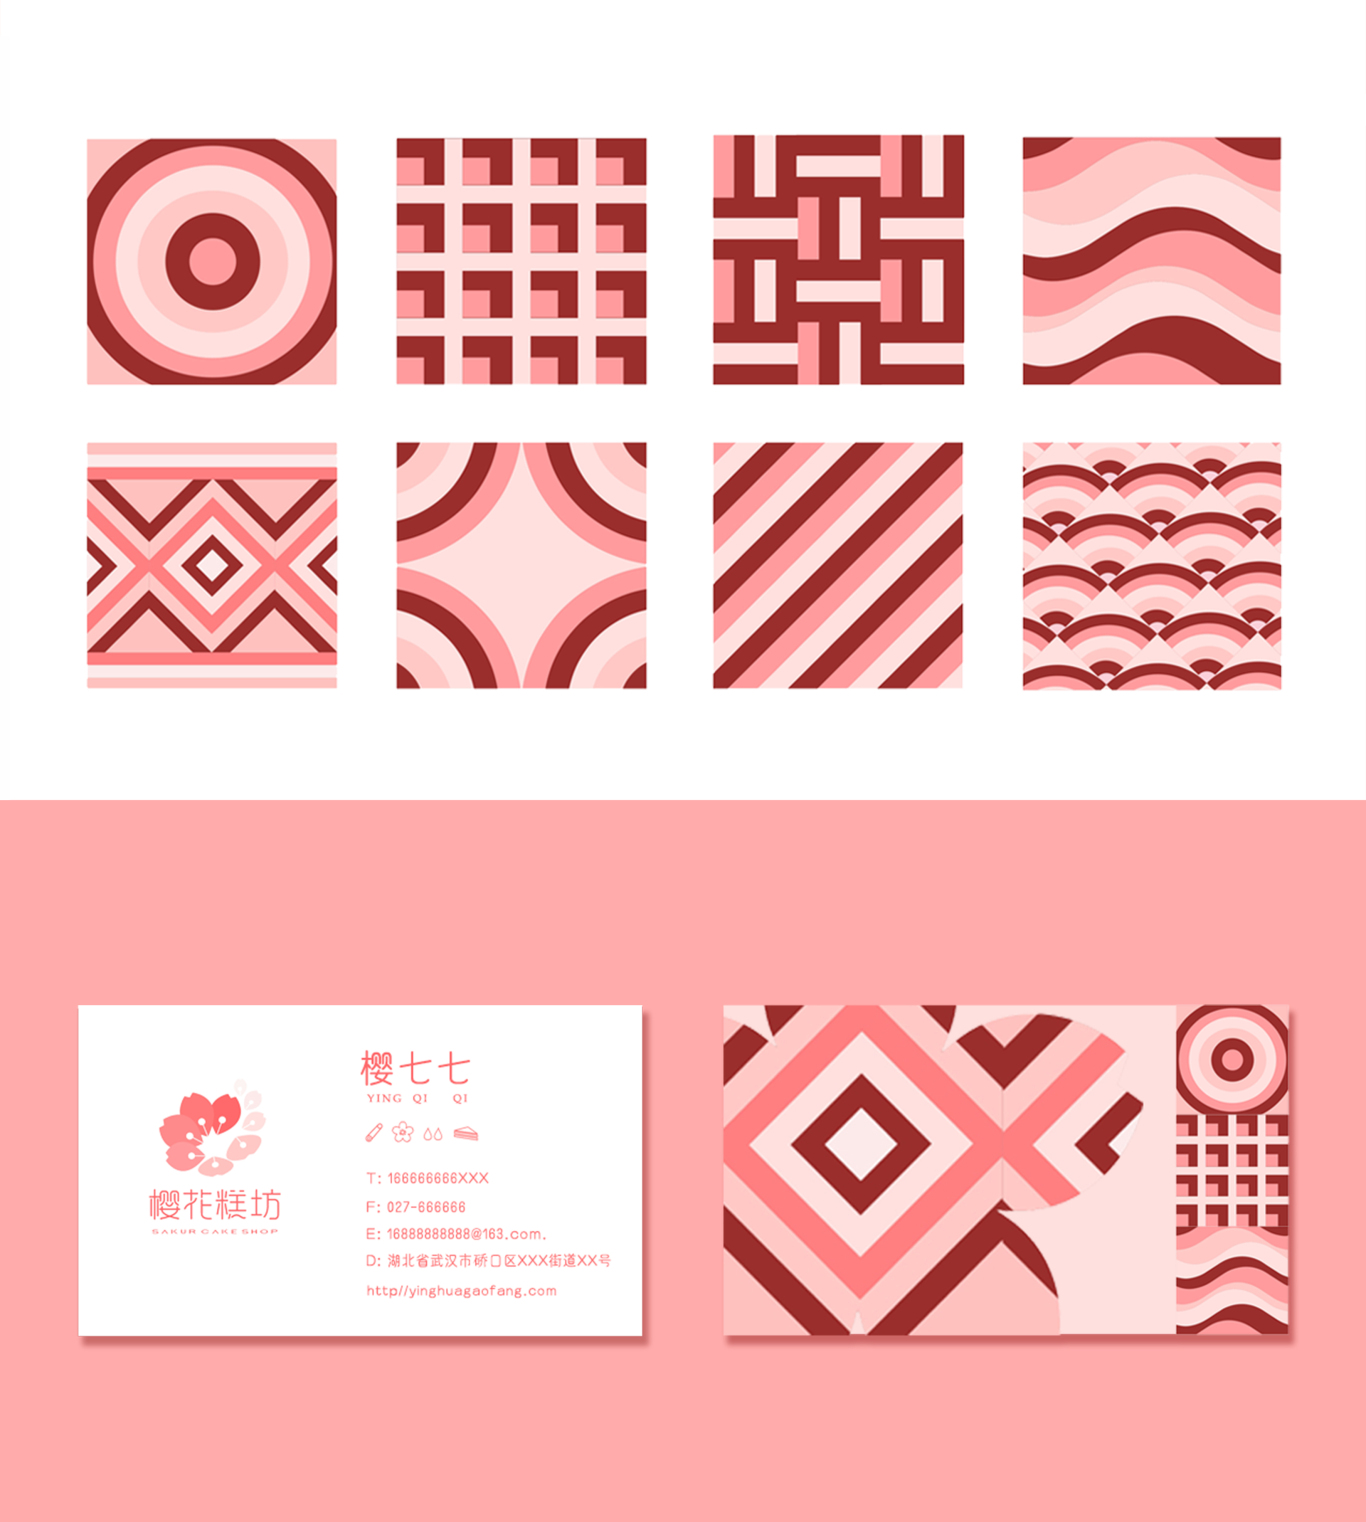 櫻花糕坊logo設計圖2